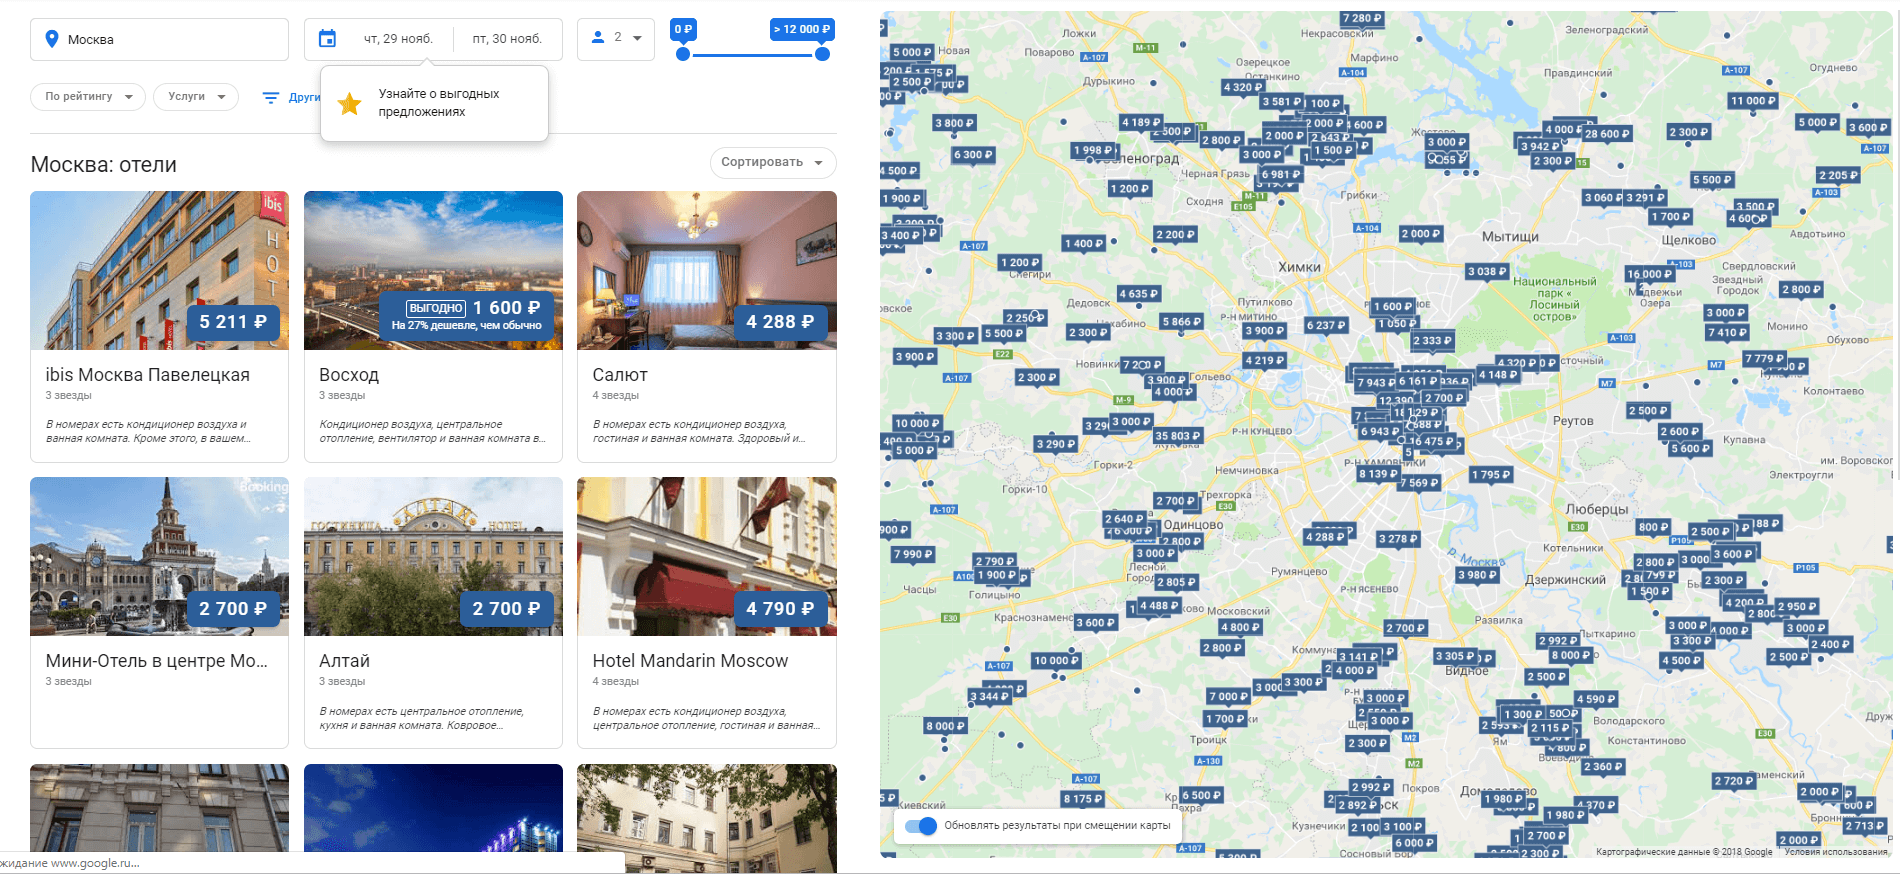 Google представил новый дизайн результатов поиска по отелям